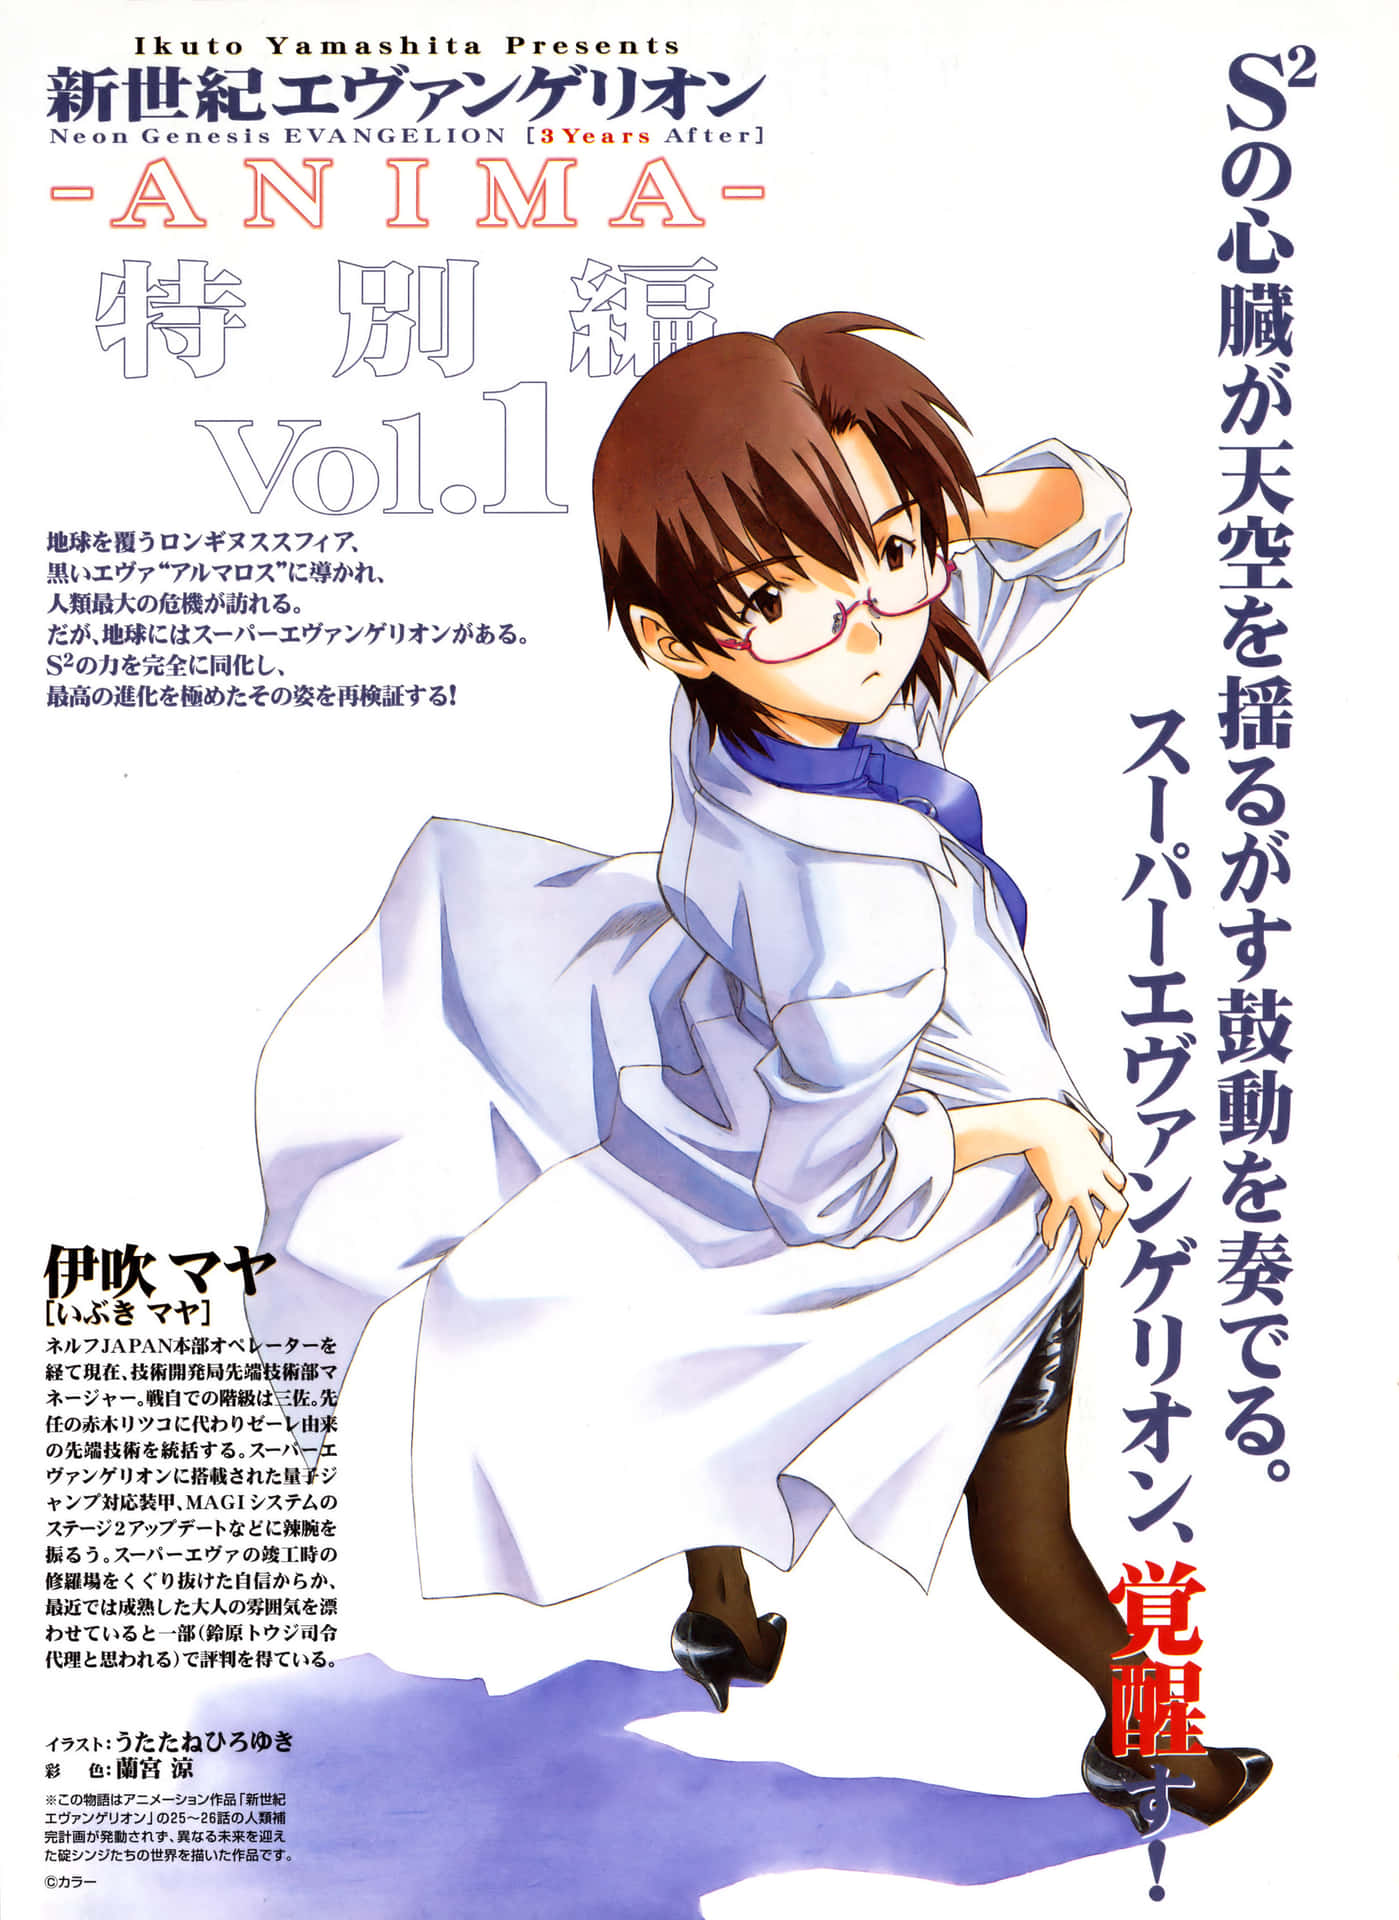 Mayaibuki, La Genio Científica De La Serie De Anime, Neon Genesis Evangelion, Aparece En Una Posición Segura Y Confiada. Fondo de pantalla